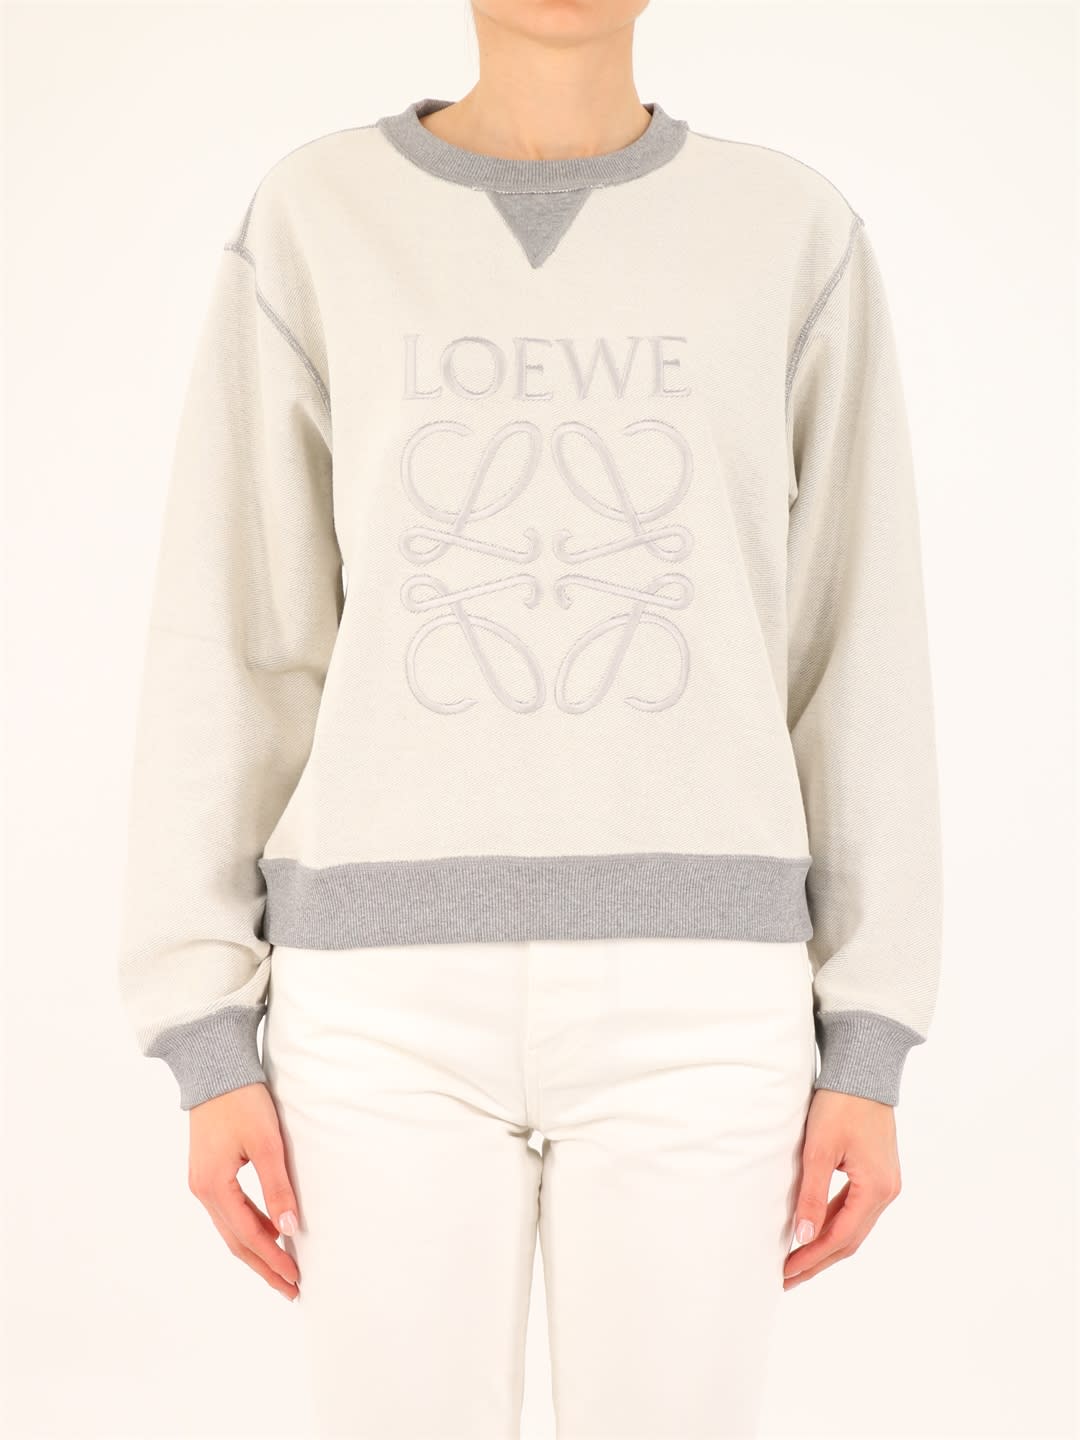 Loewe Maxi Logo Sweatshirt